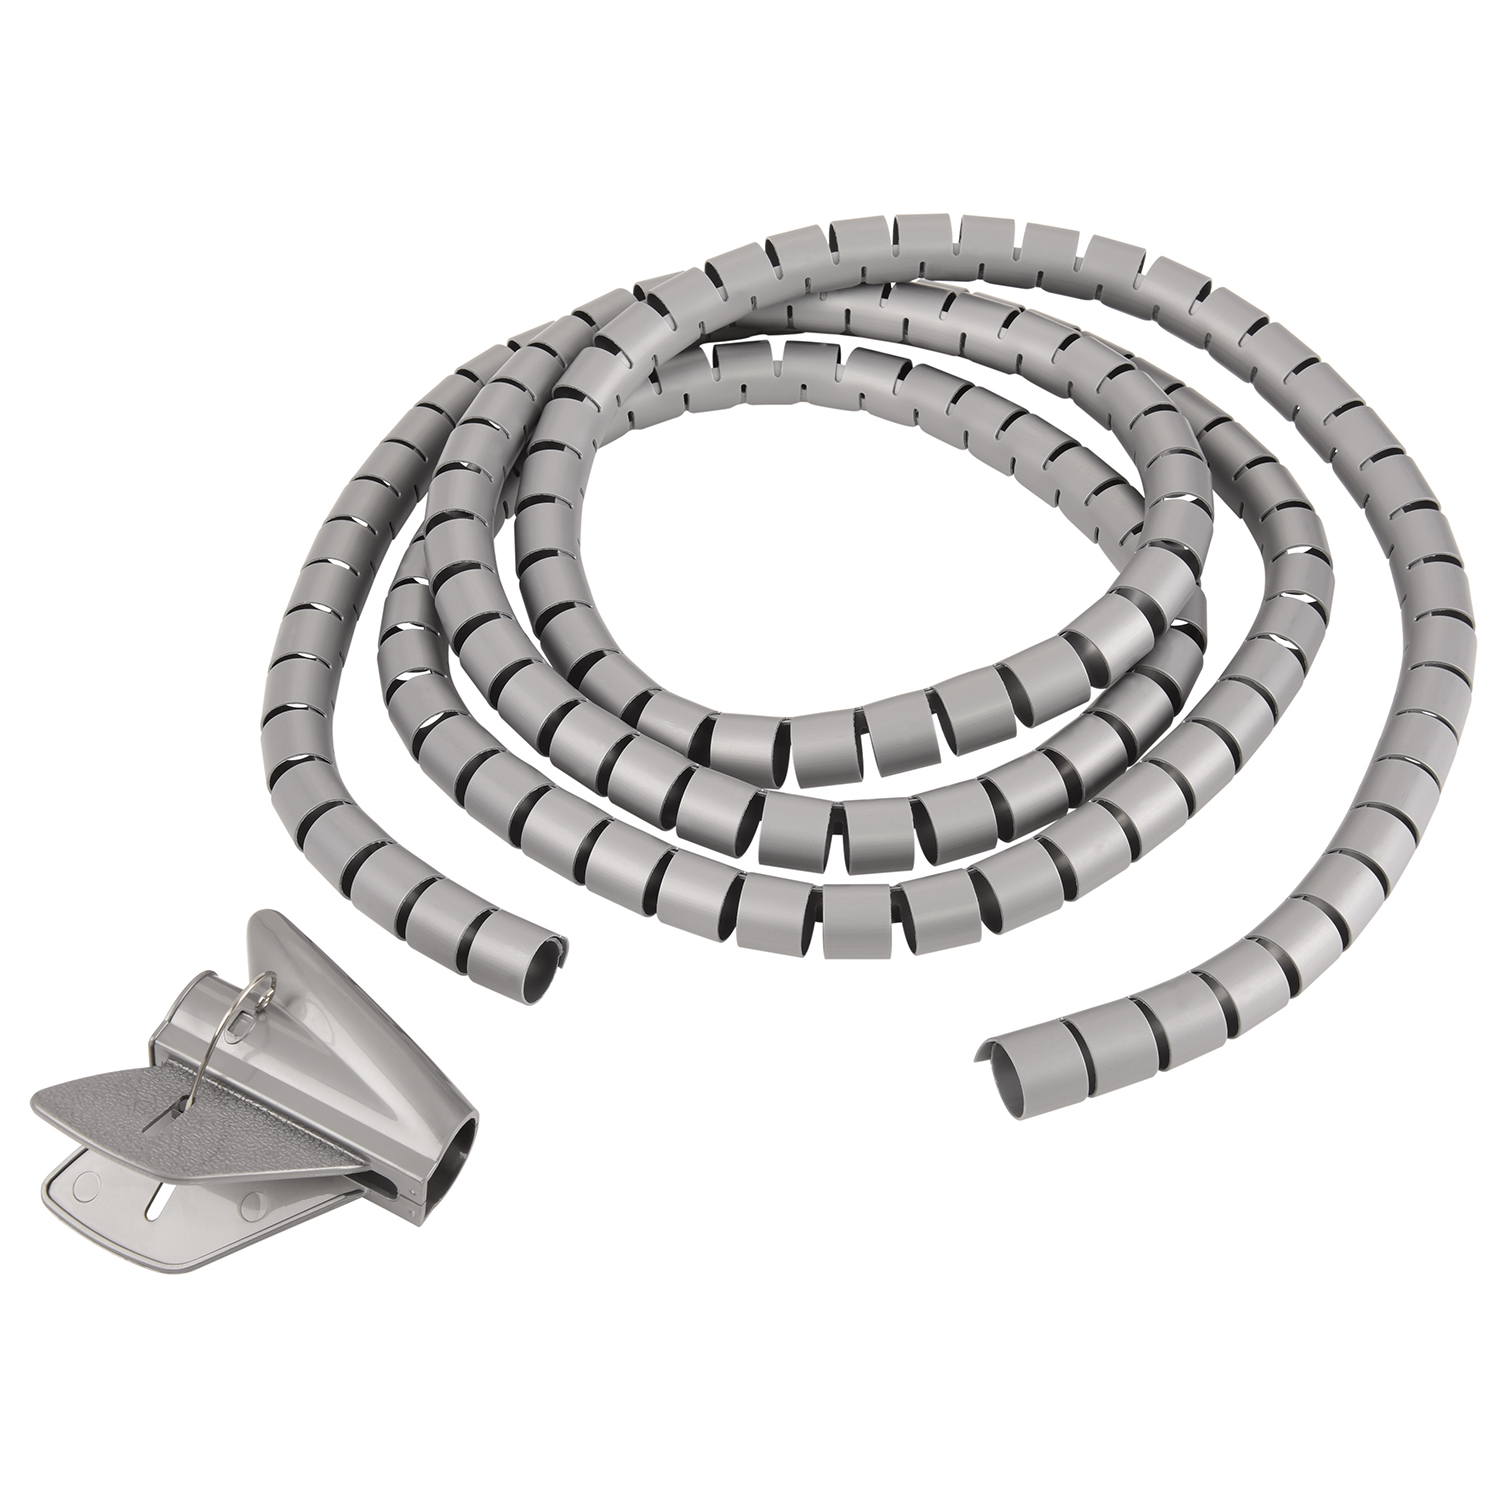 Einfädelhilfe, Silber, Silber 20mm, Spiral-Kabelschlauch TPFNET mit 2,5m Kabelschlauch, Premium